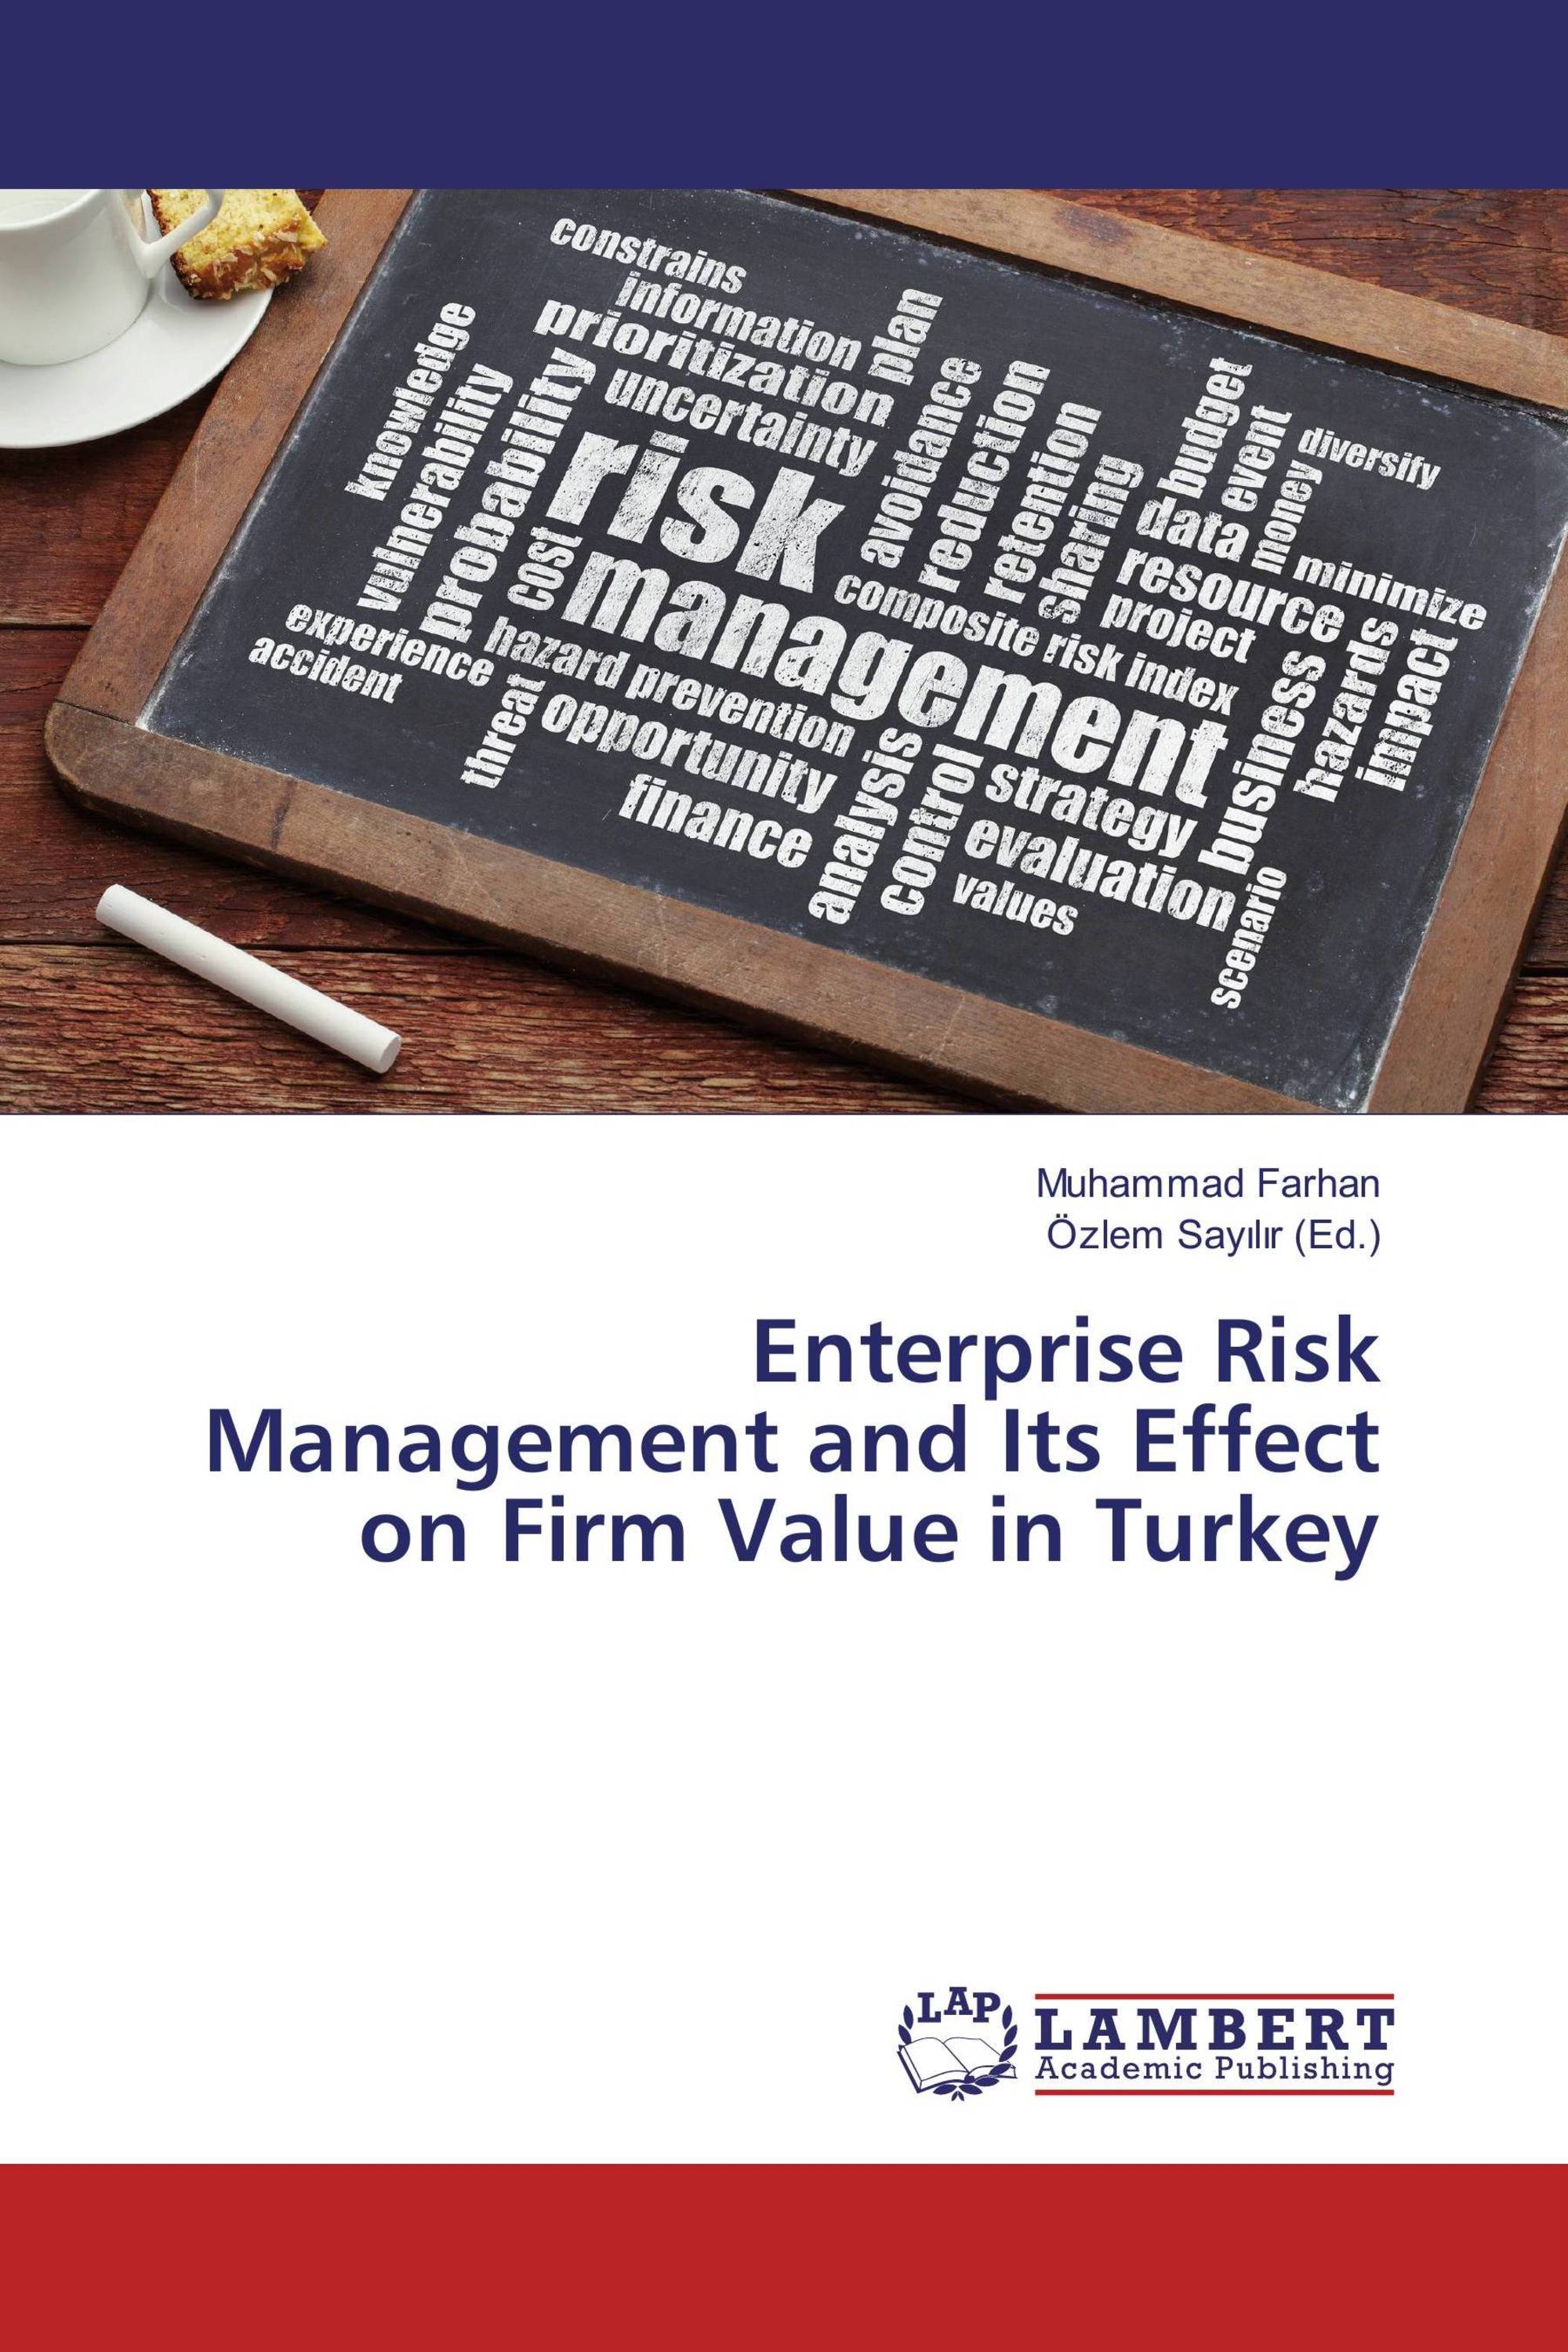 thesis enterprise risk management